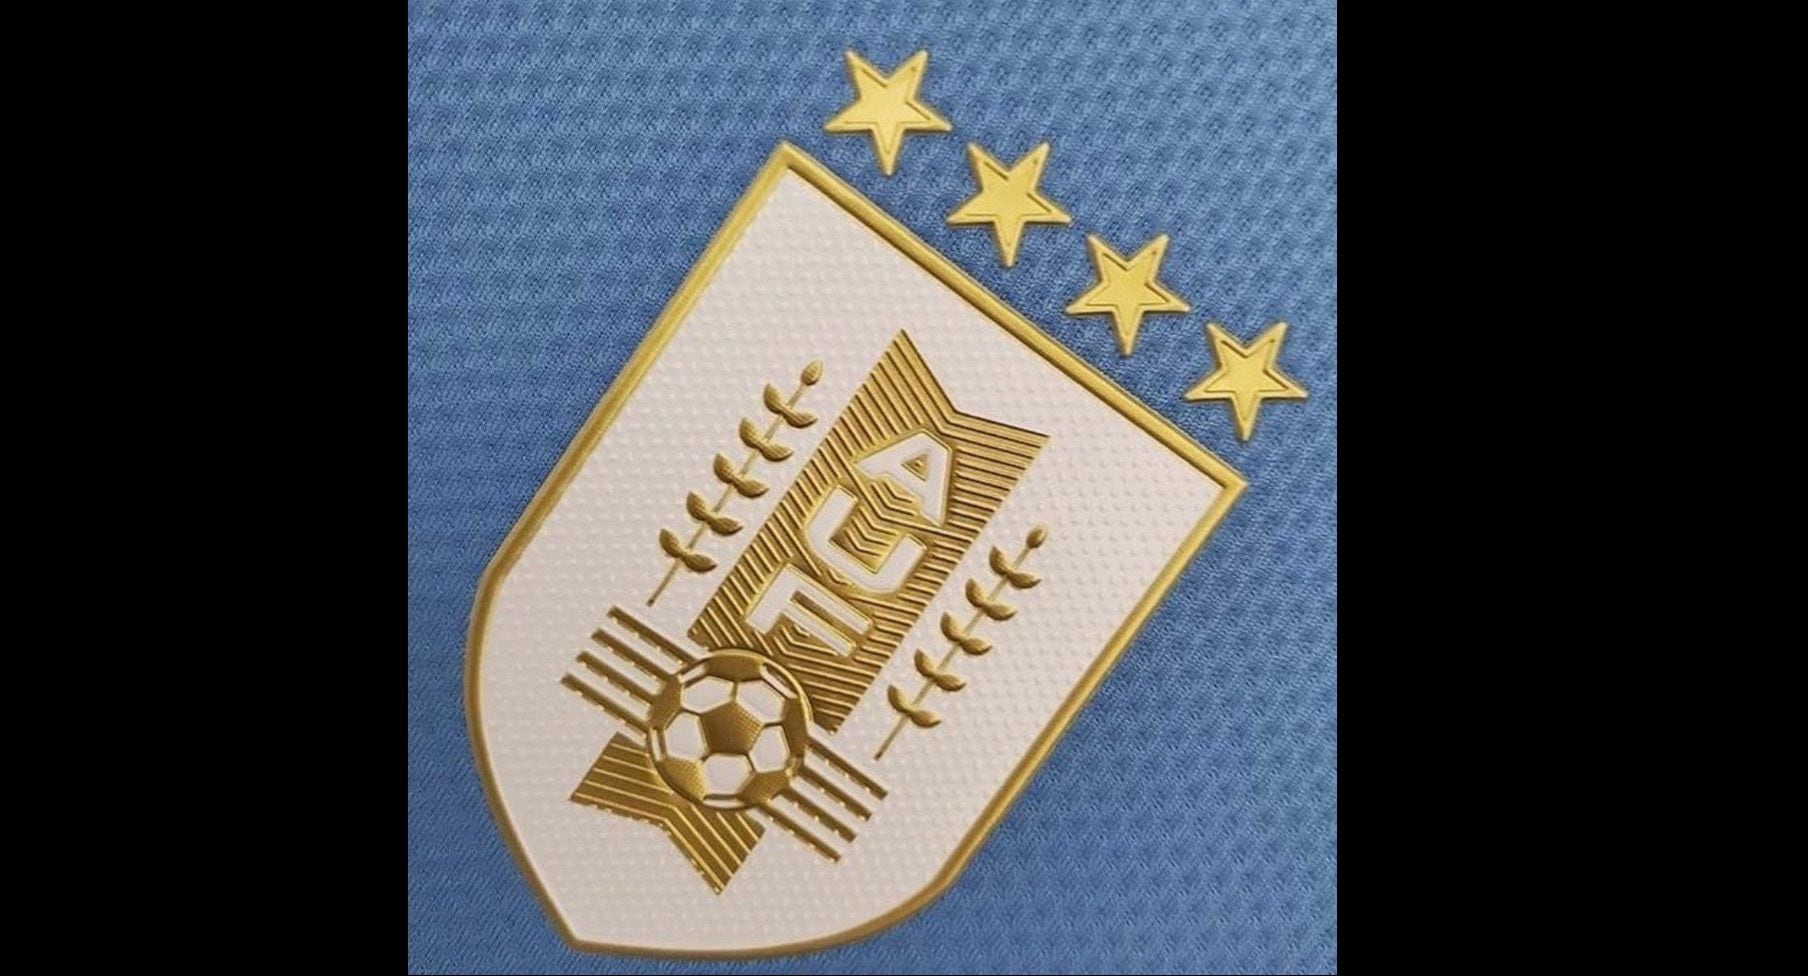 URUGUAY TENDRÁ QUE RETIRAR DOS ESTRELLAS DE SU CAMISETA ⭐ La FIFA intimó a  la Asociación Uruguaya de Fútbol para que retire dos de las…